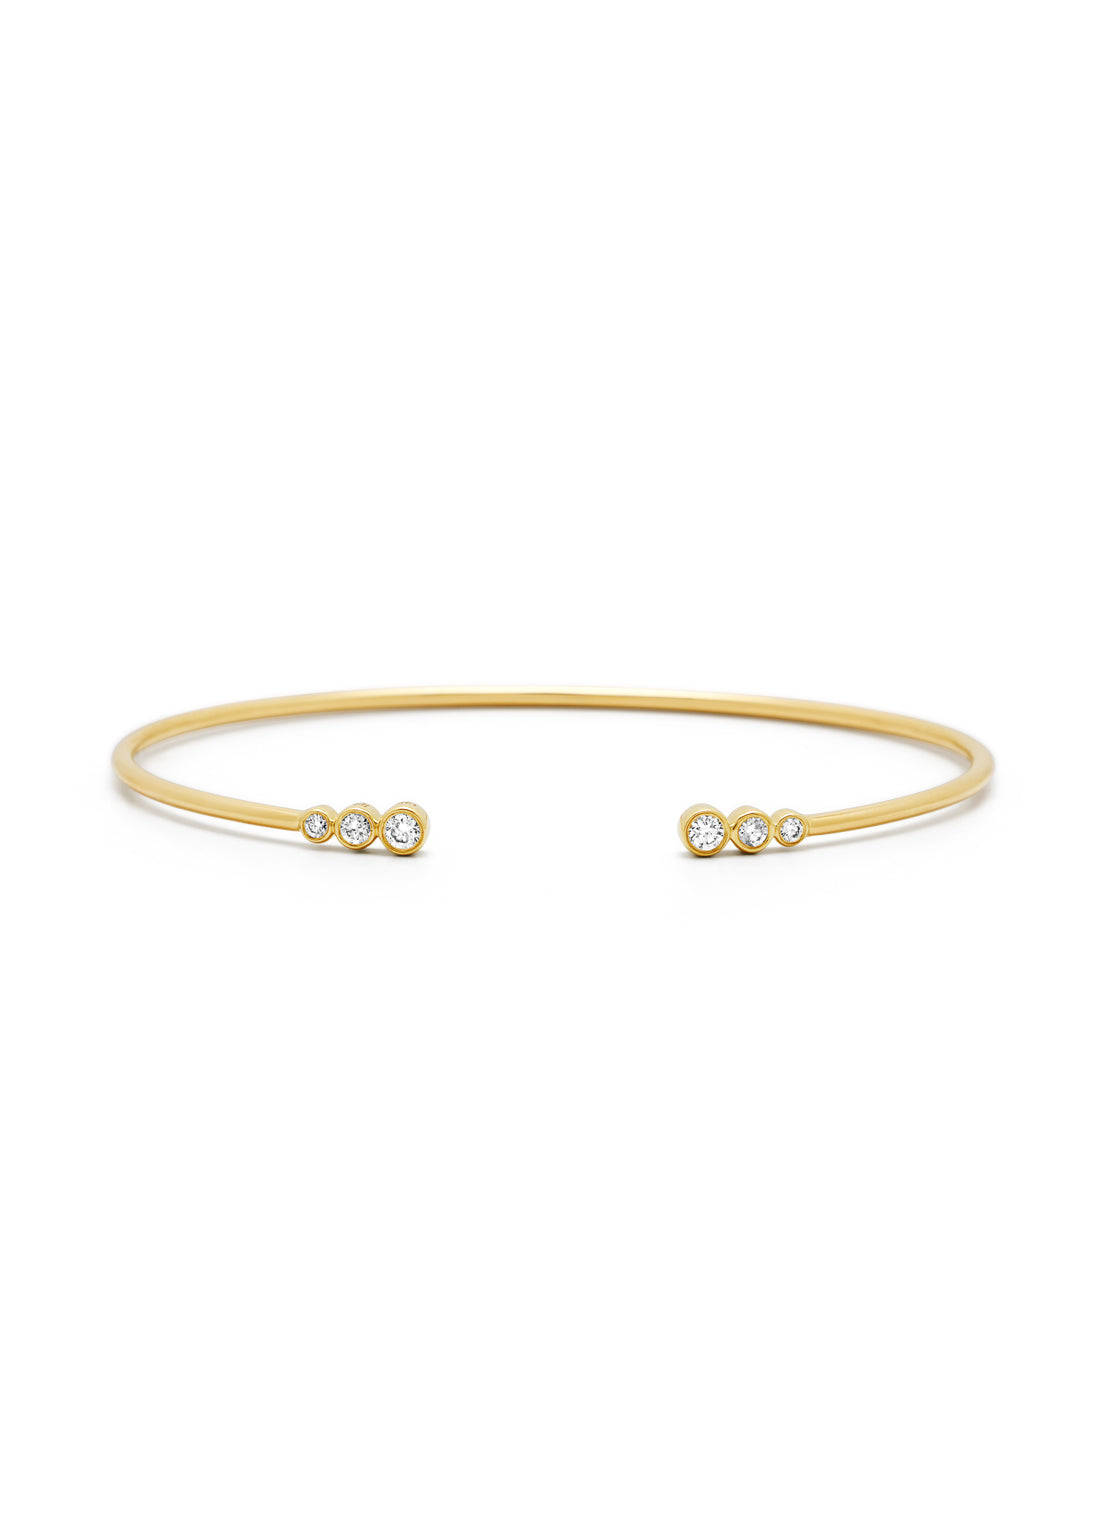 Yellow gold bracelet, 0.20 ct diamond, la dolce vita